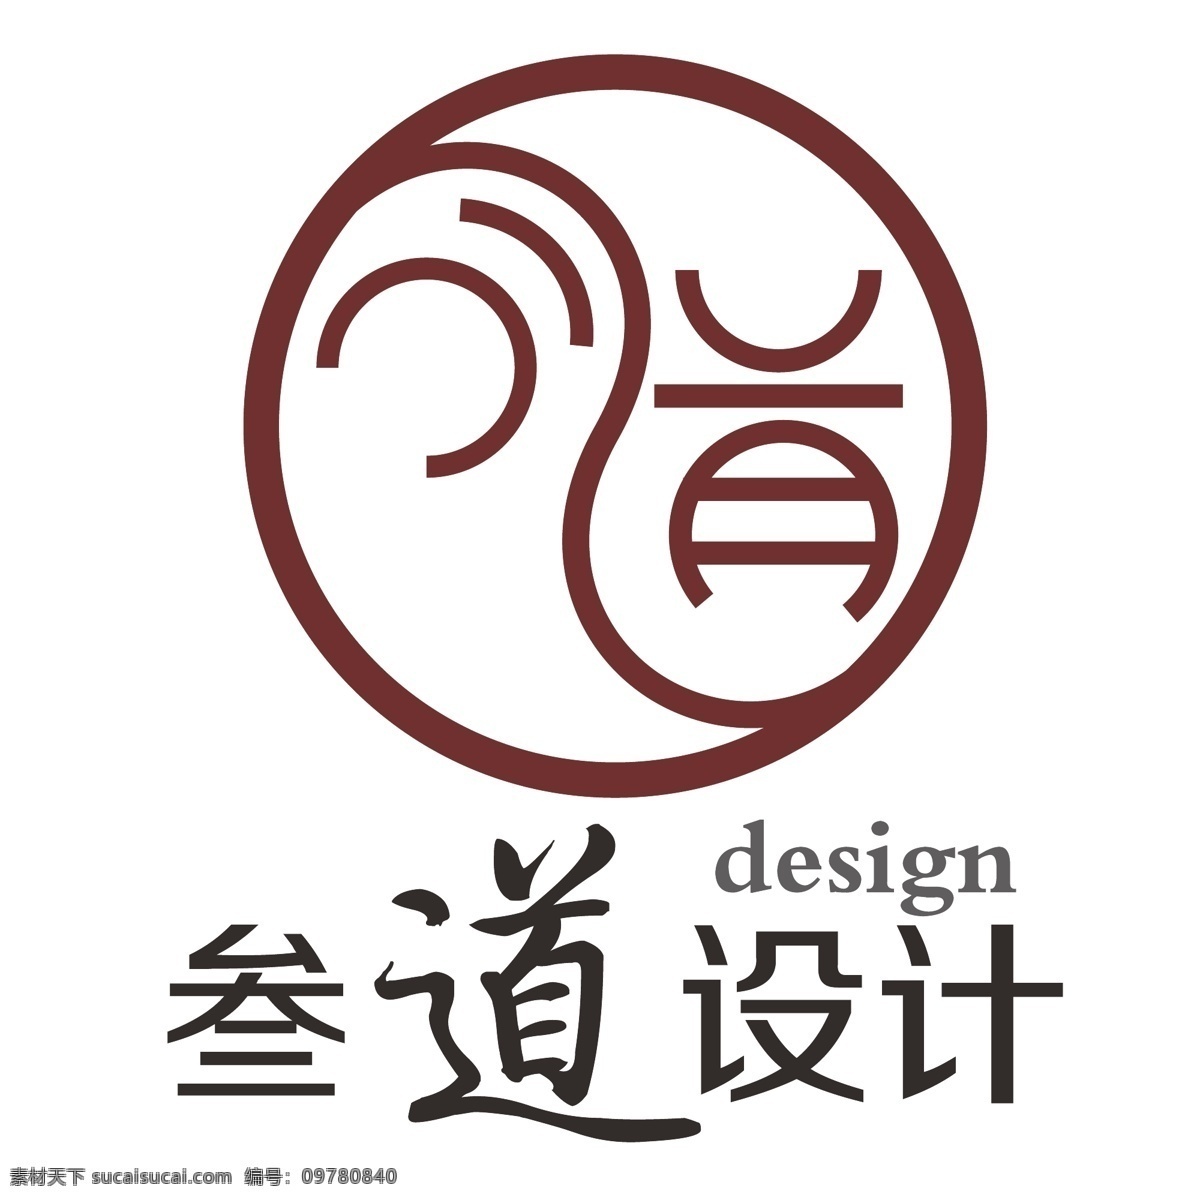 设计公司 logo 工艺 公司 企业 创意 原创 标志图标 标志